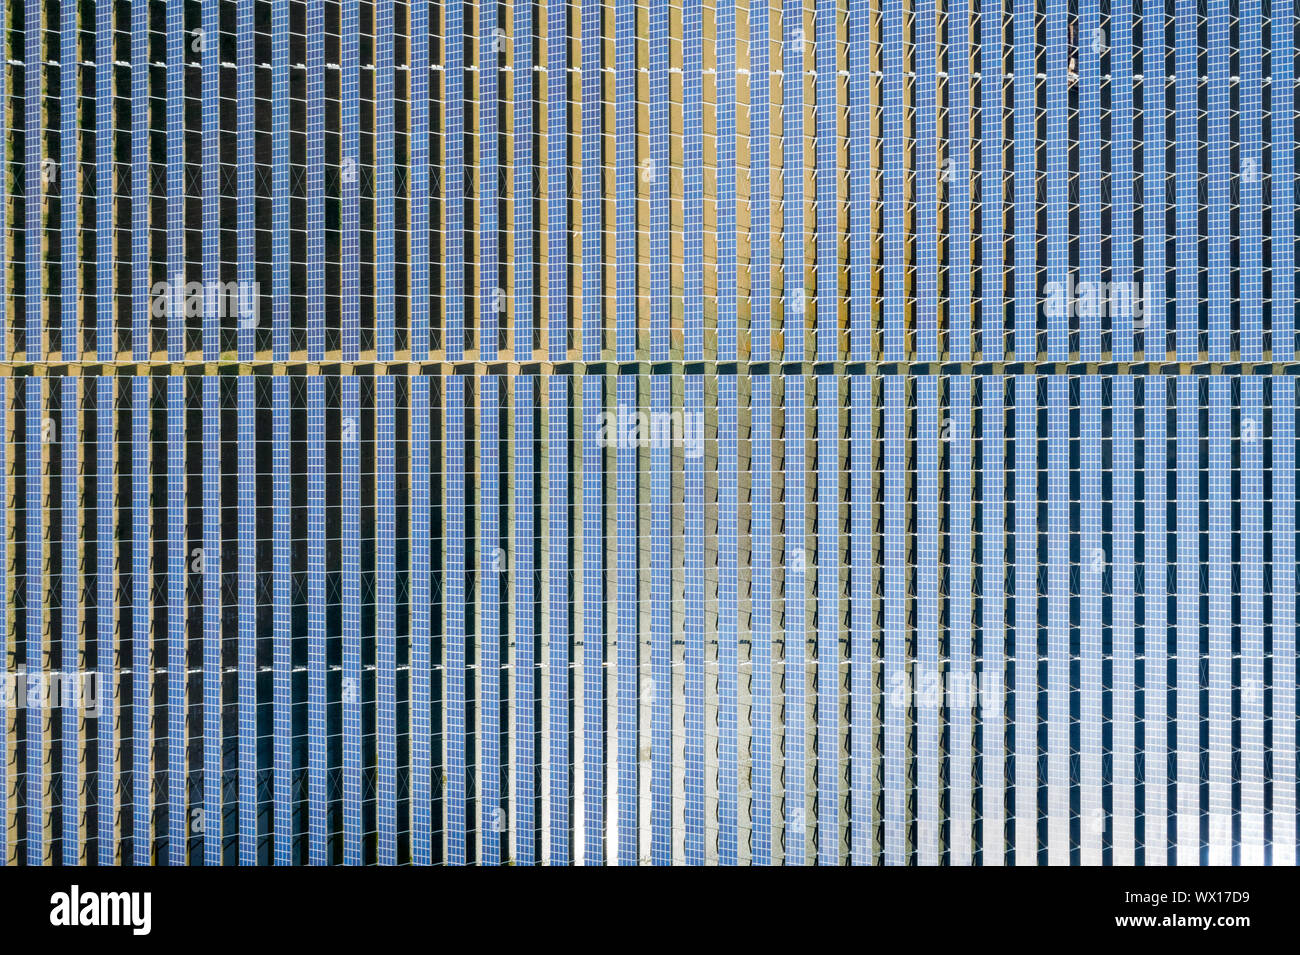 neatly arranged solar panels Stock Photo